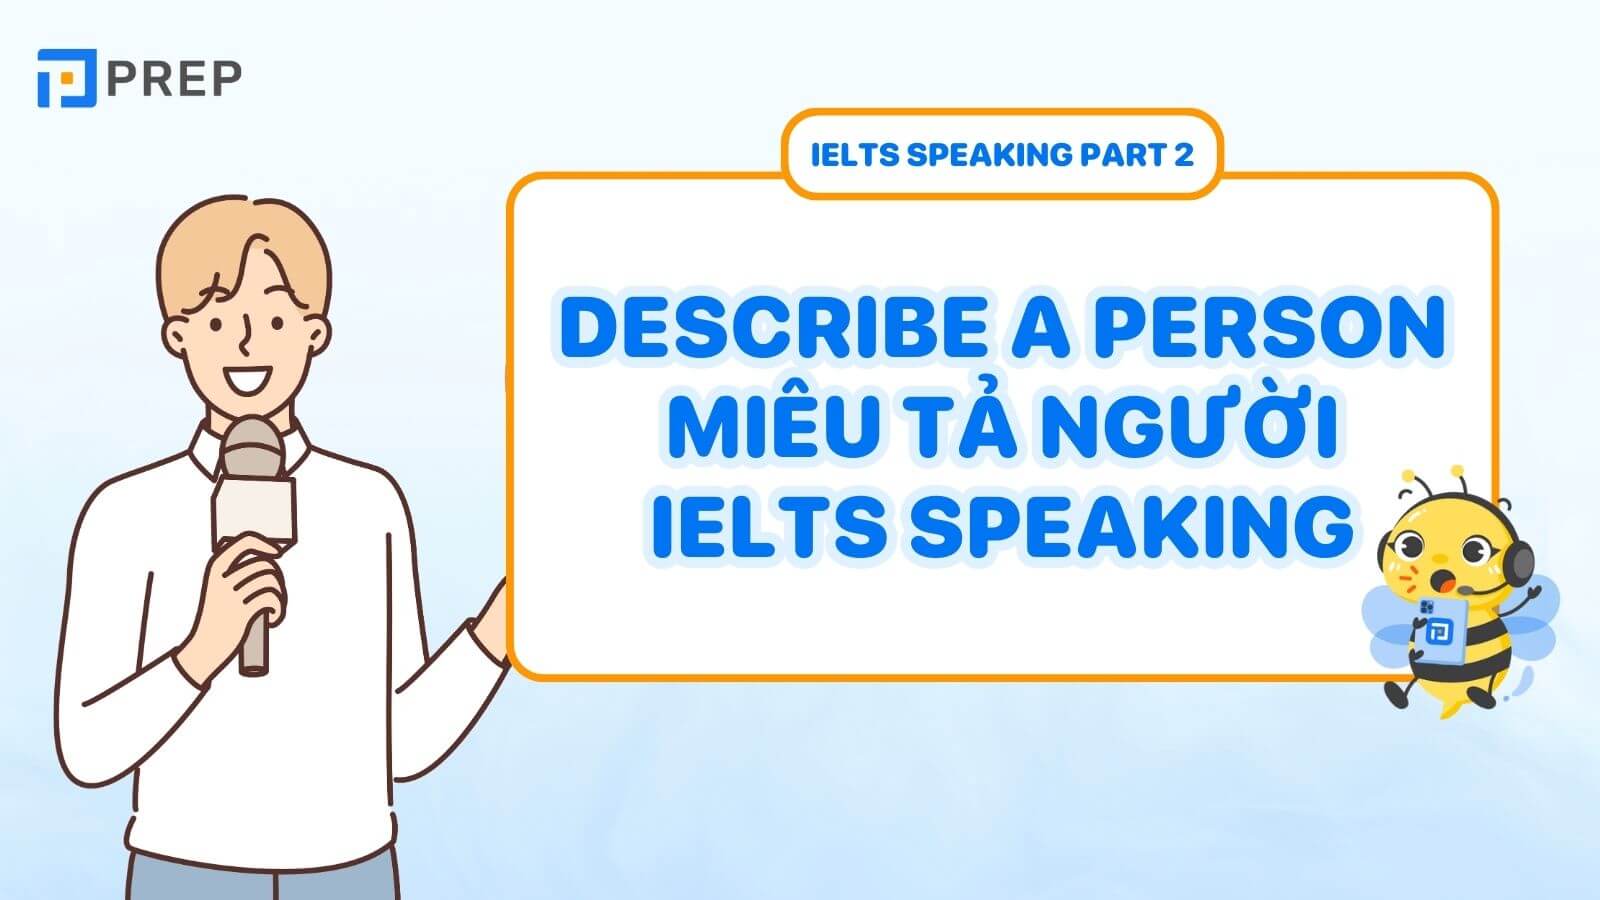 Bài mẫu Describe a person miêu tả người IELTS Speaking